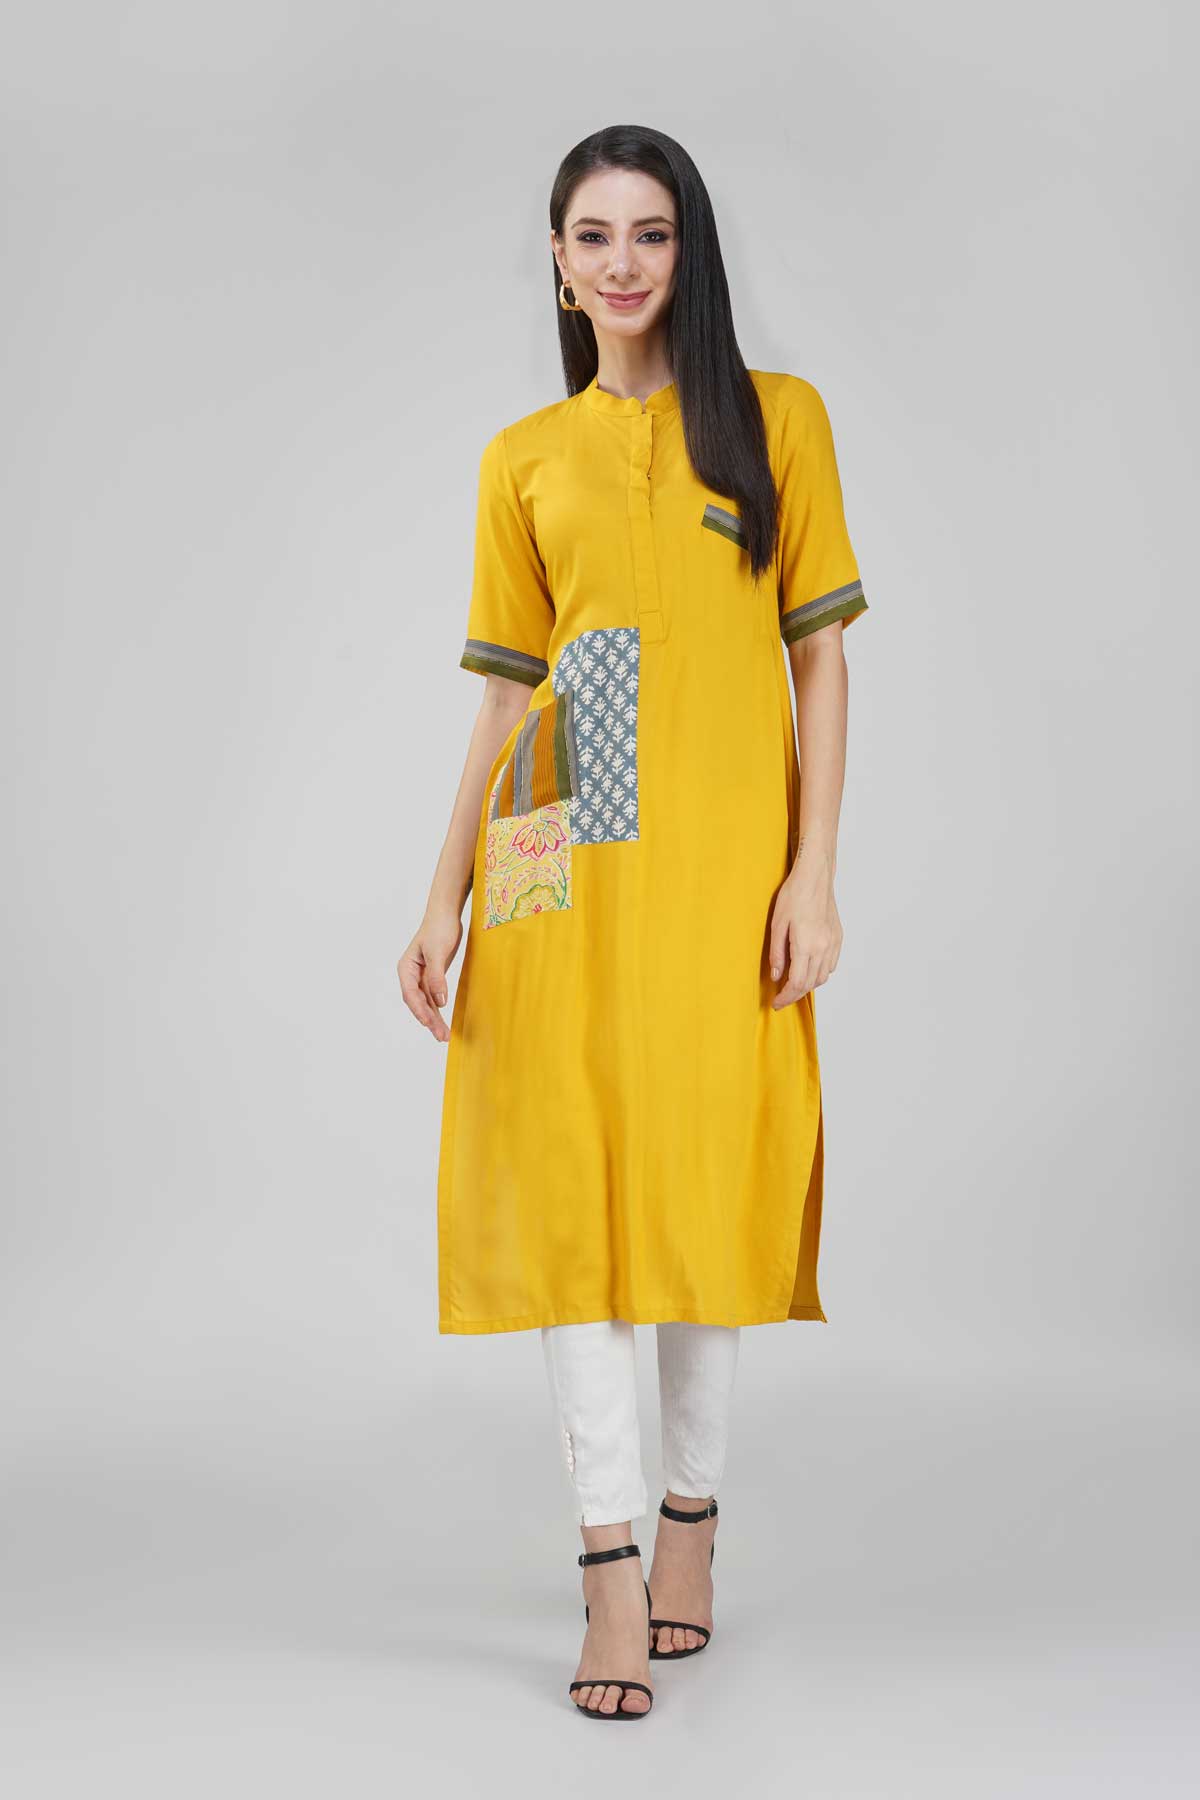 Beautiful Cotton-Silk Kurti with patch detailing. | Stylish dress designs,  Cotton kurti designs, Kurta designs